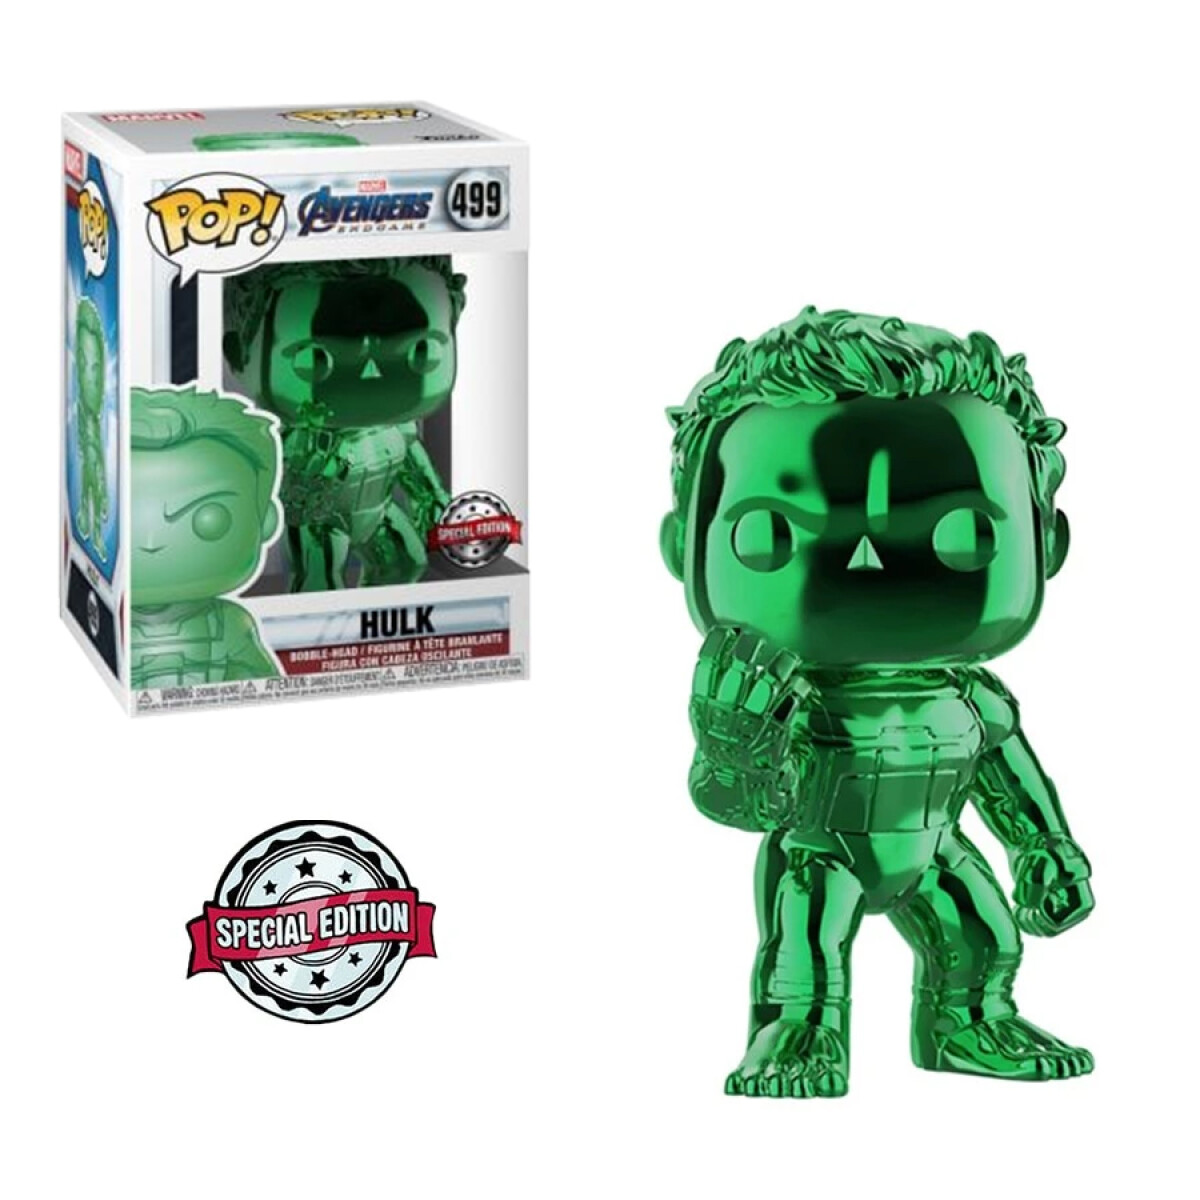 Hulk Marvel Avengers (Green Chrome) [Exclusivo] - 499 